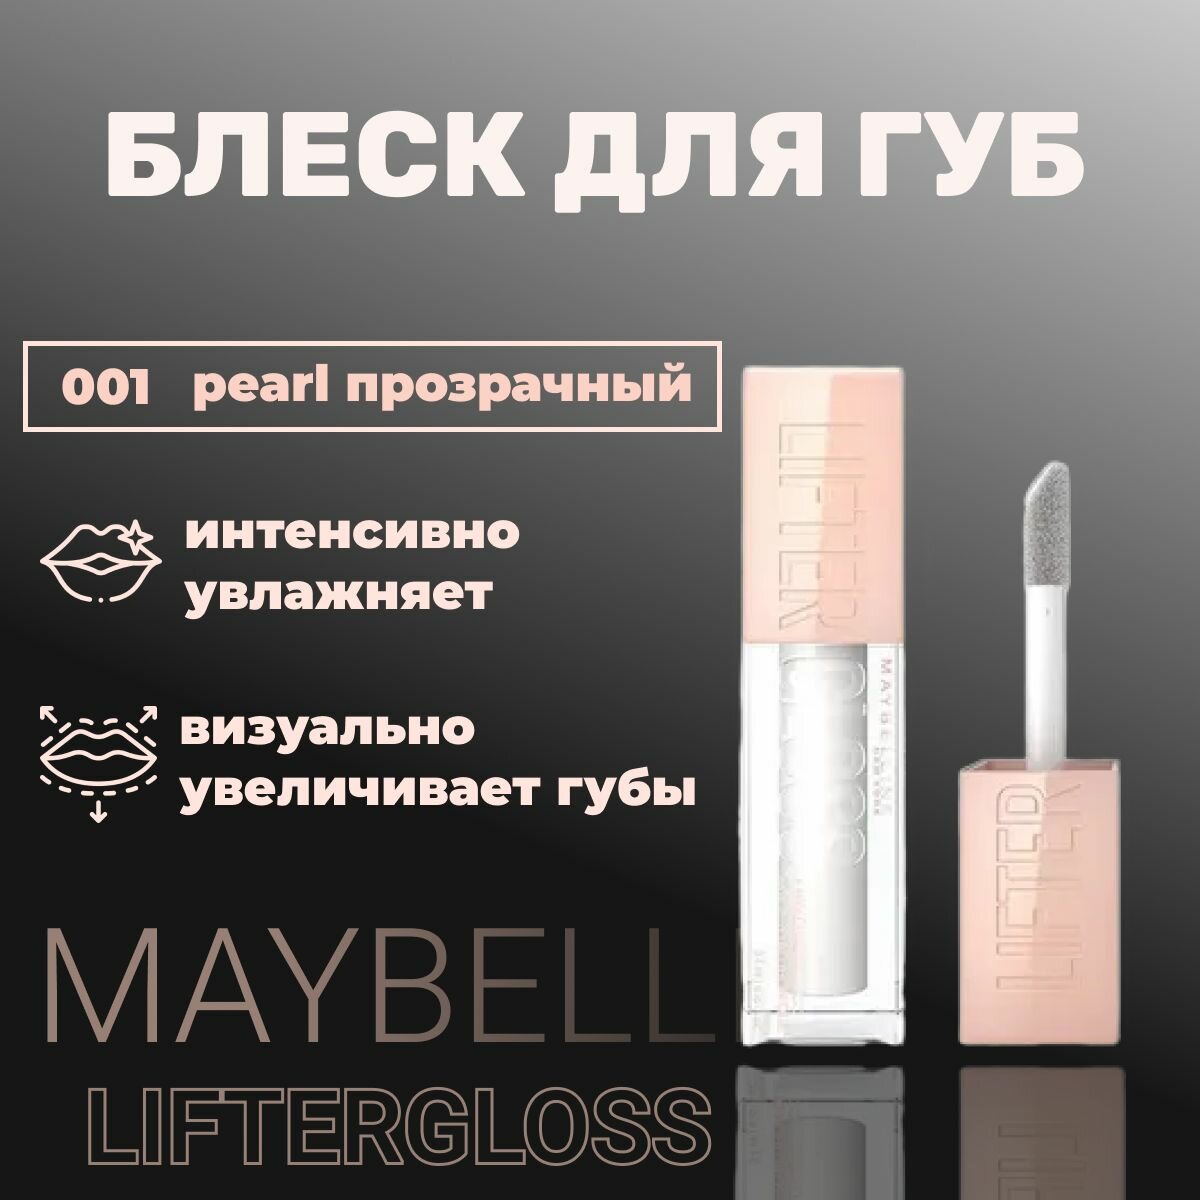 Блеск для губ MAYBELLINE lifter gloss 001